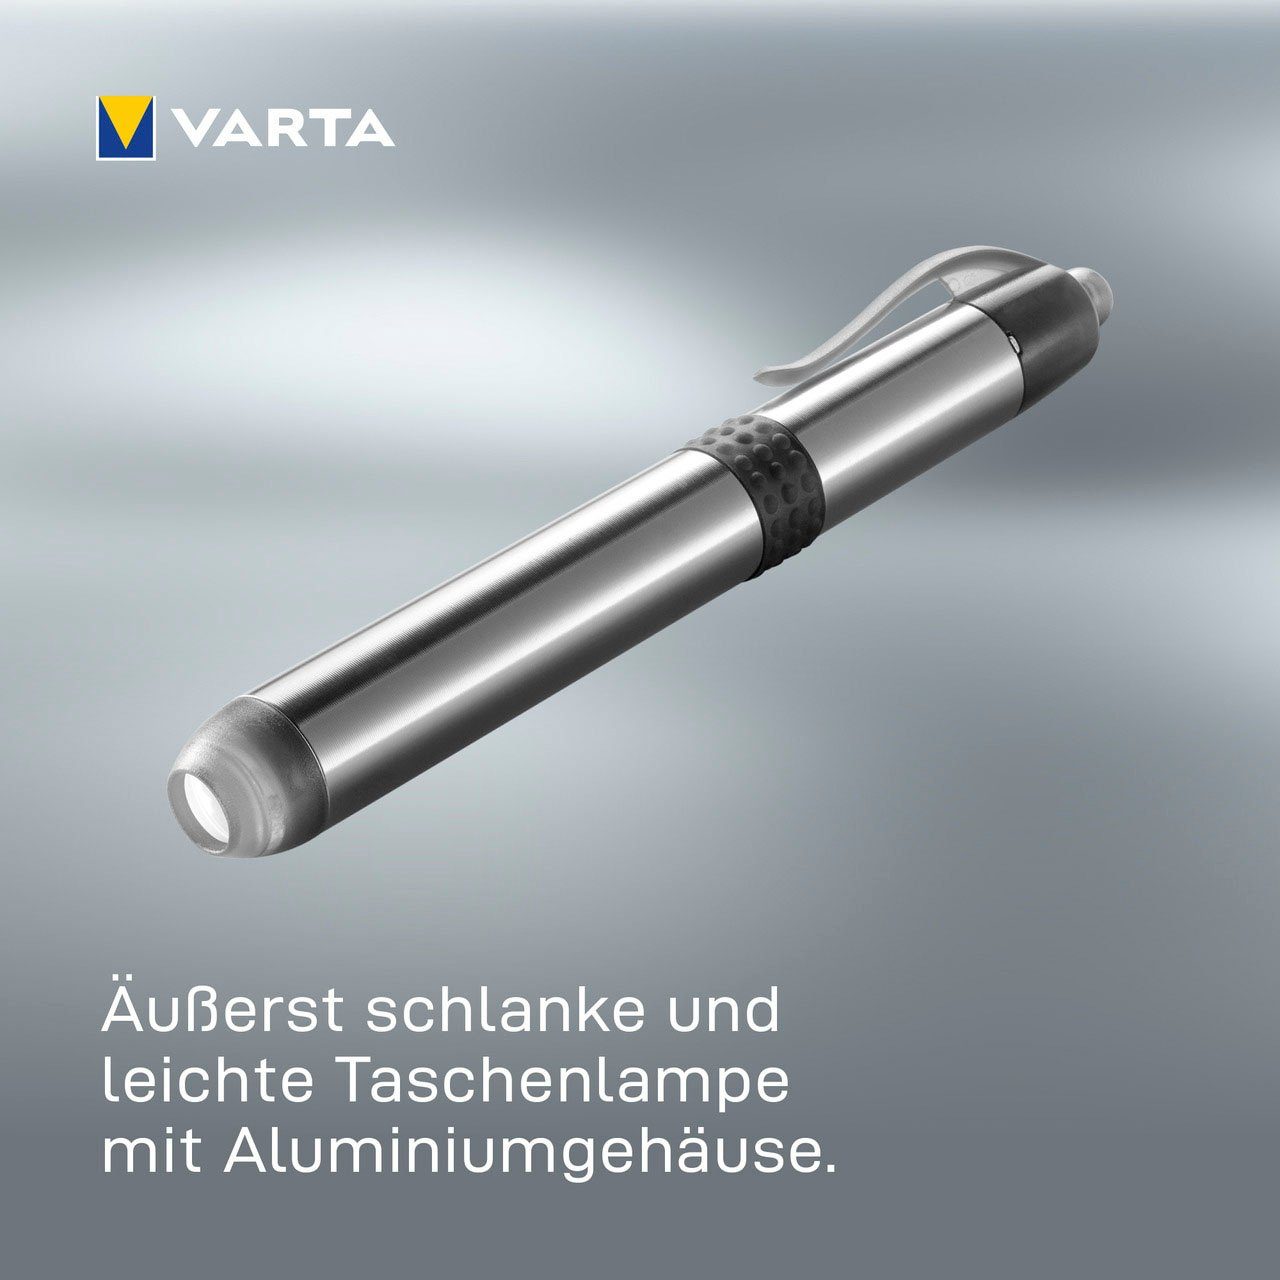 VARTA Taschenlampe Pen Batt. Light with 1AAA